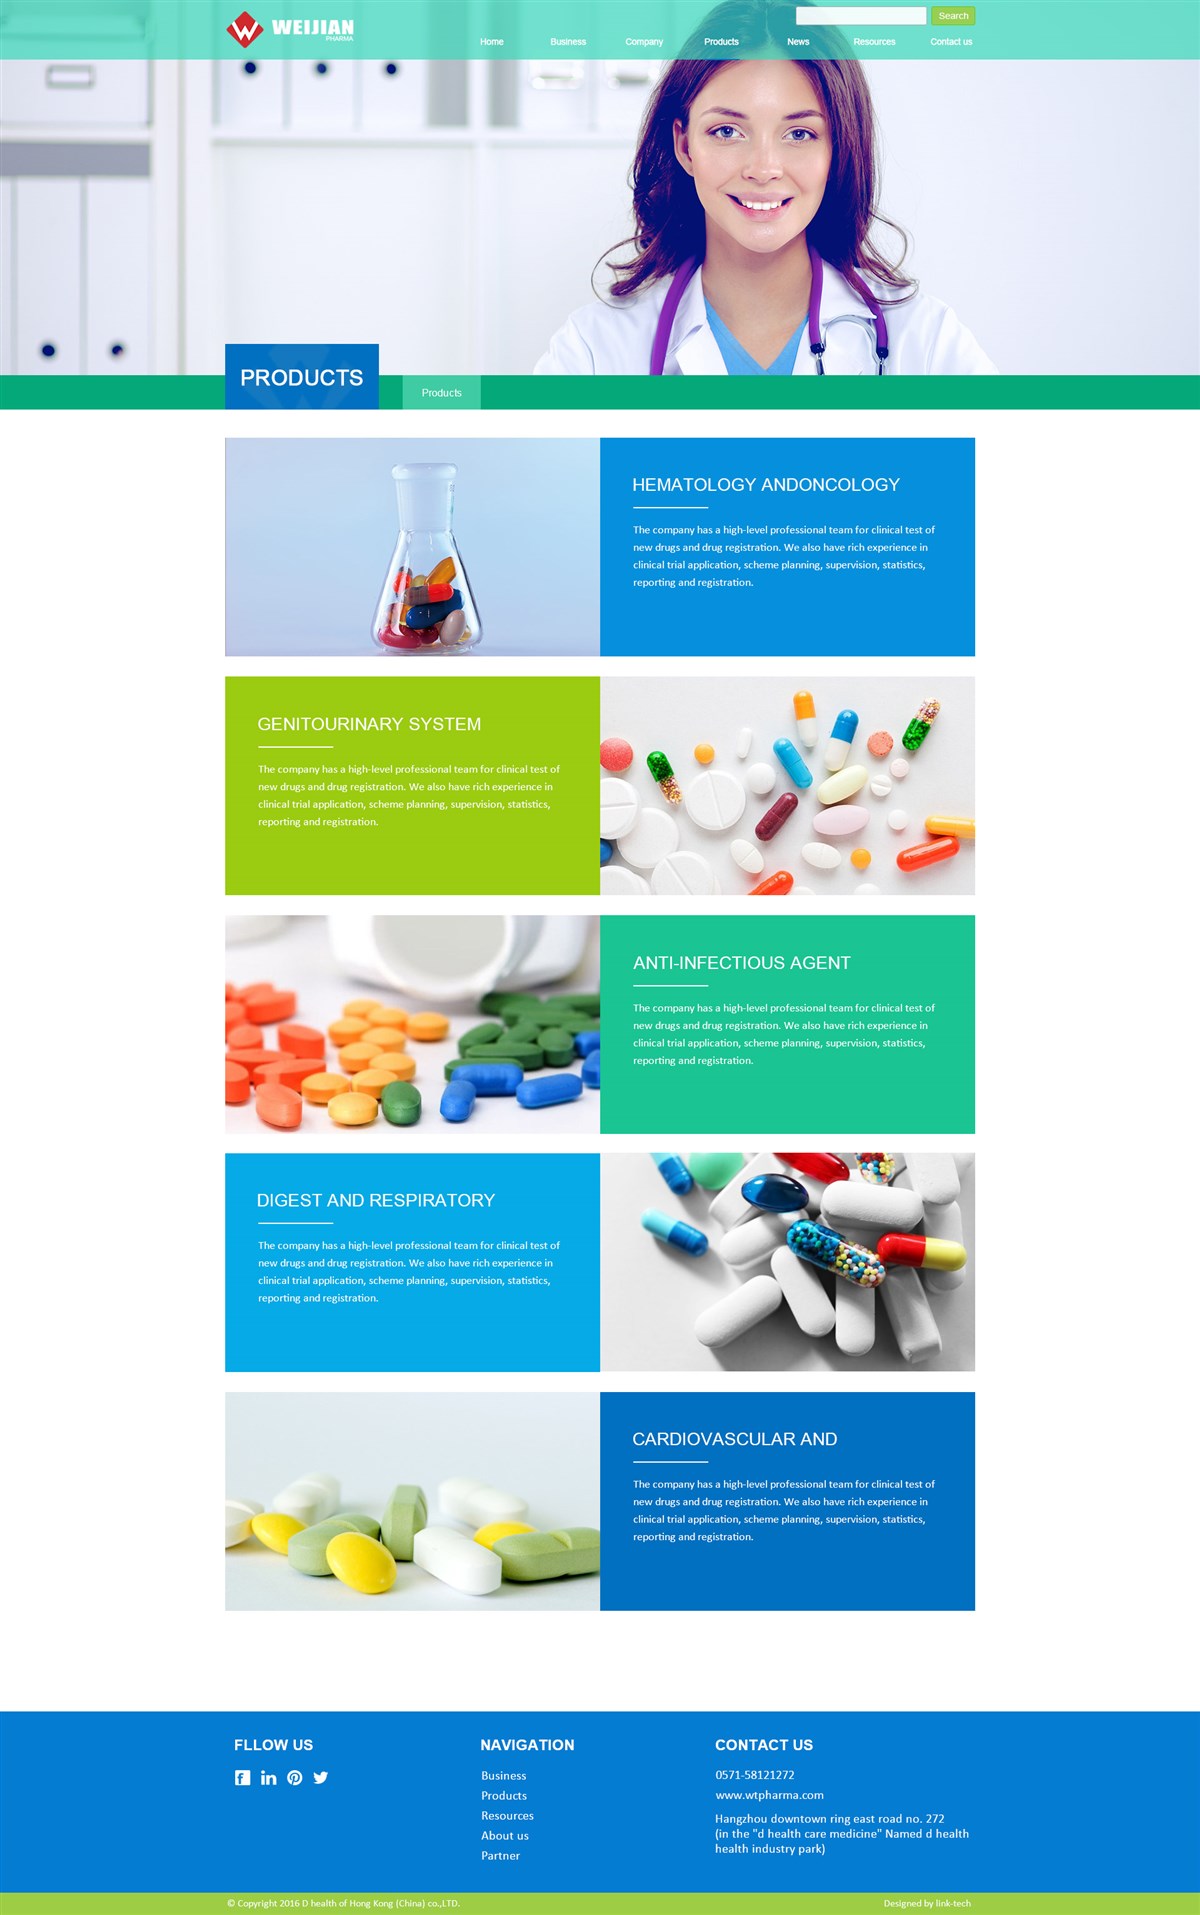 国外药品网站设计